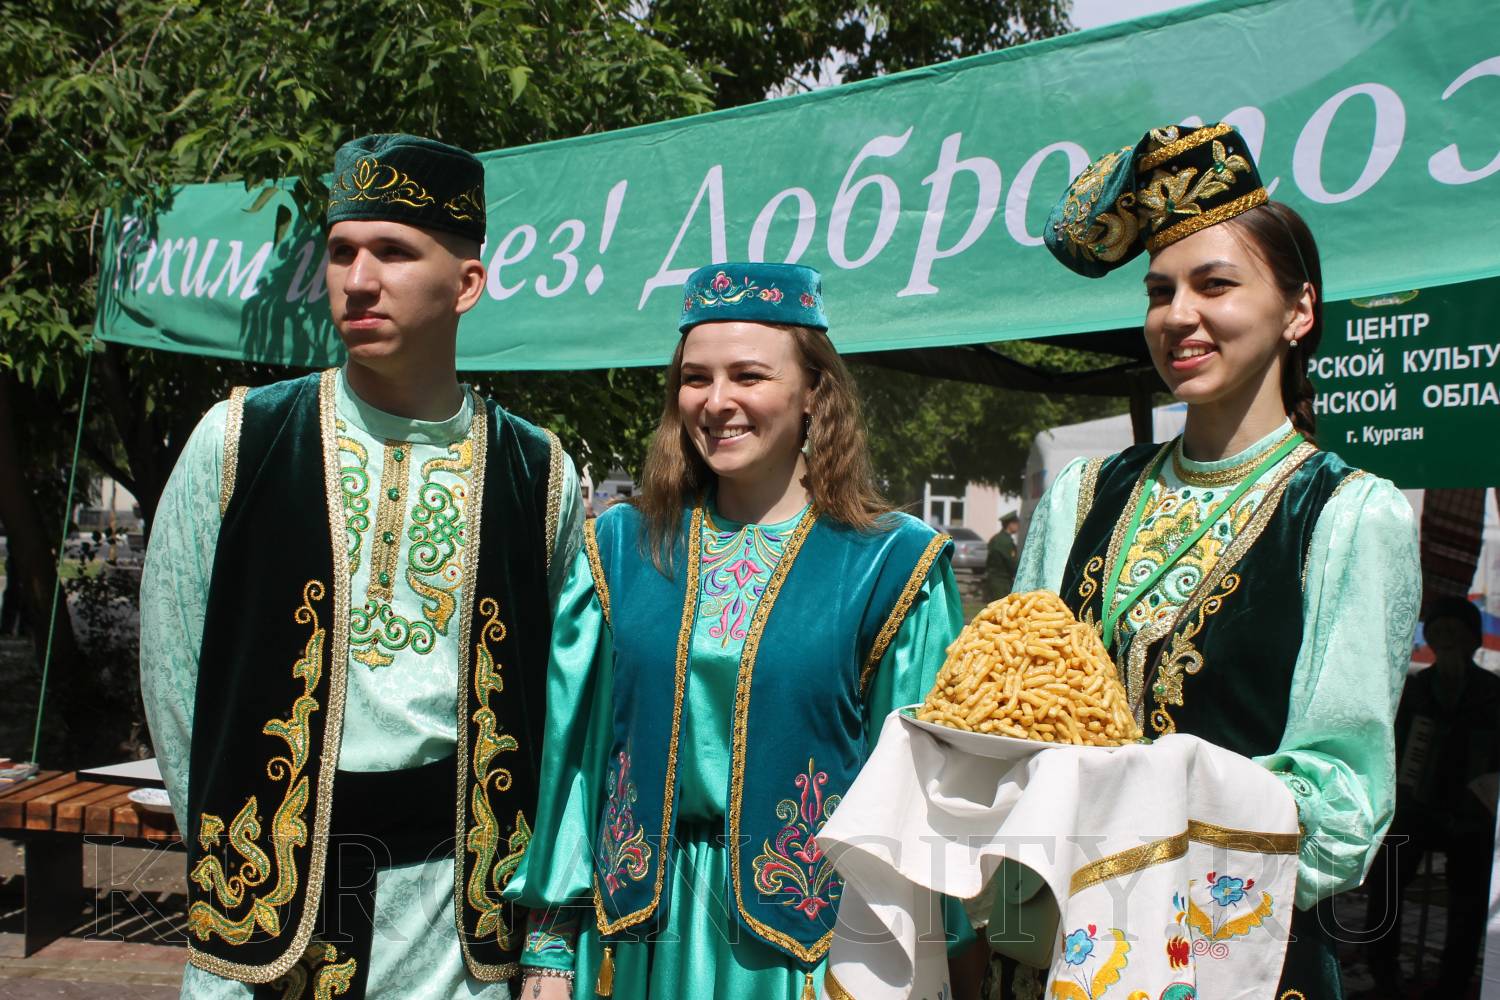 Курган отмечает День России ярким масштабным праздником.